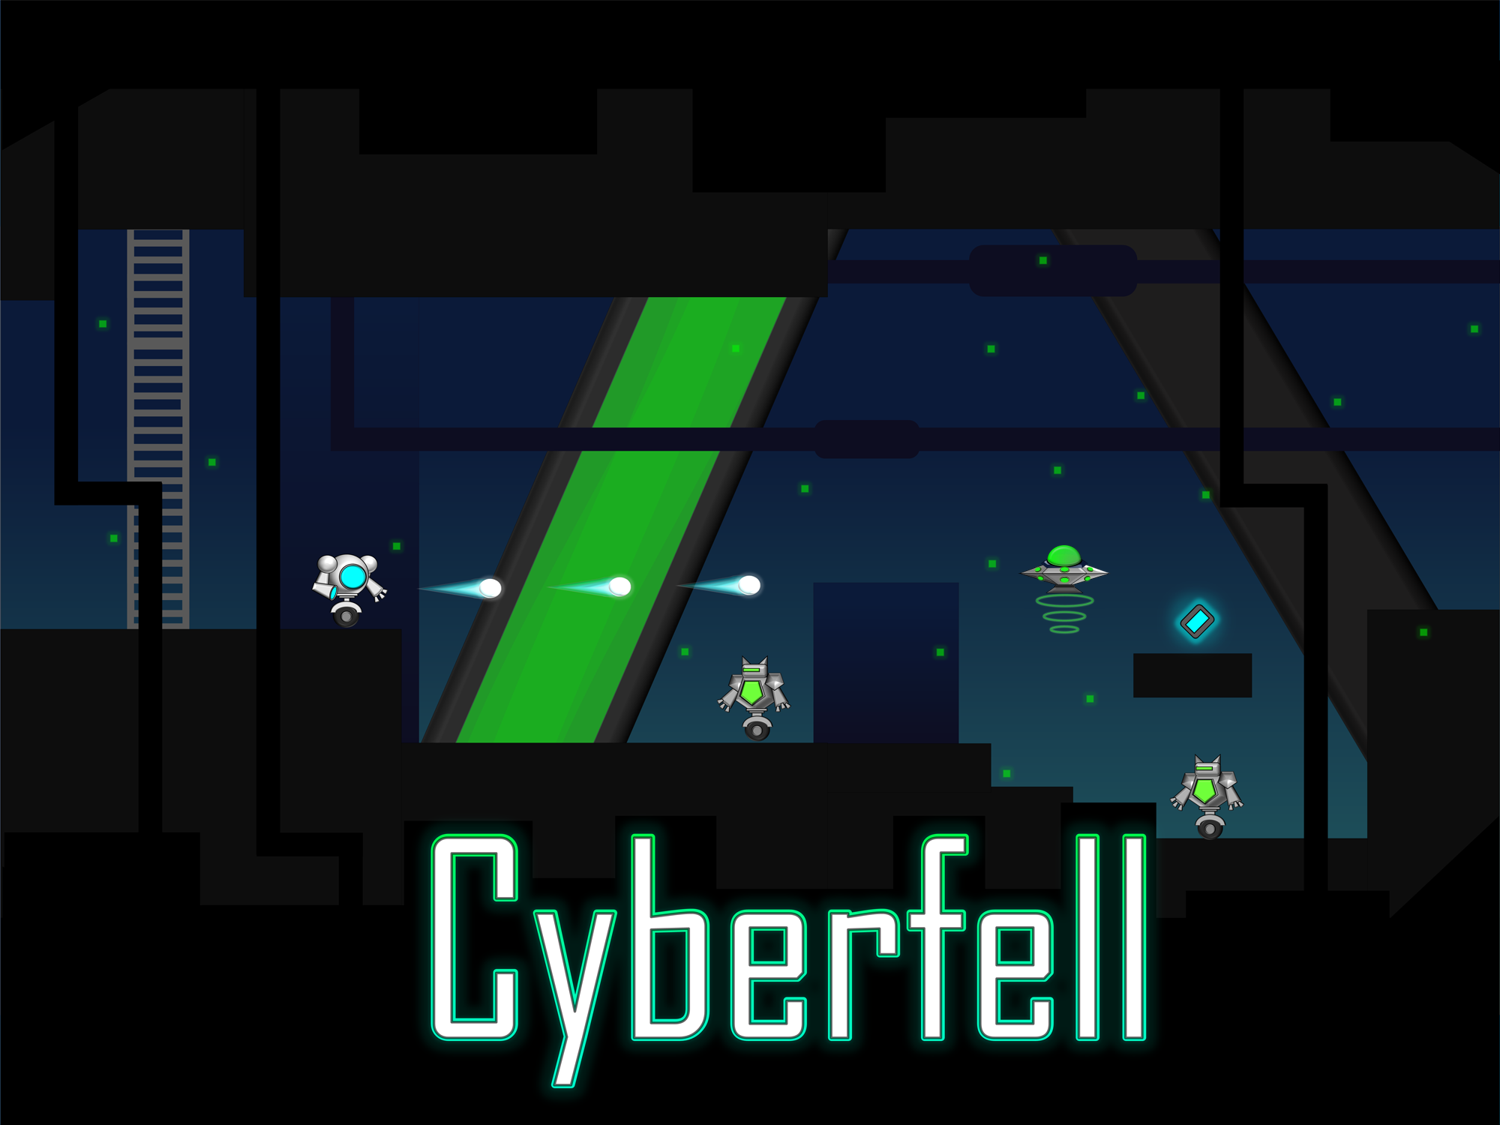 Cyberfell